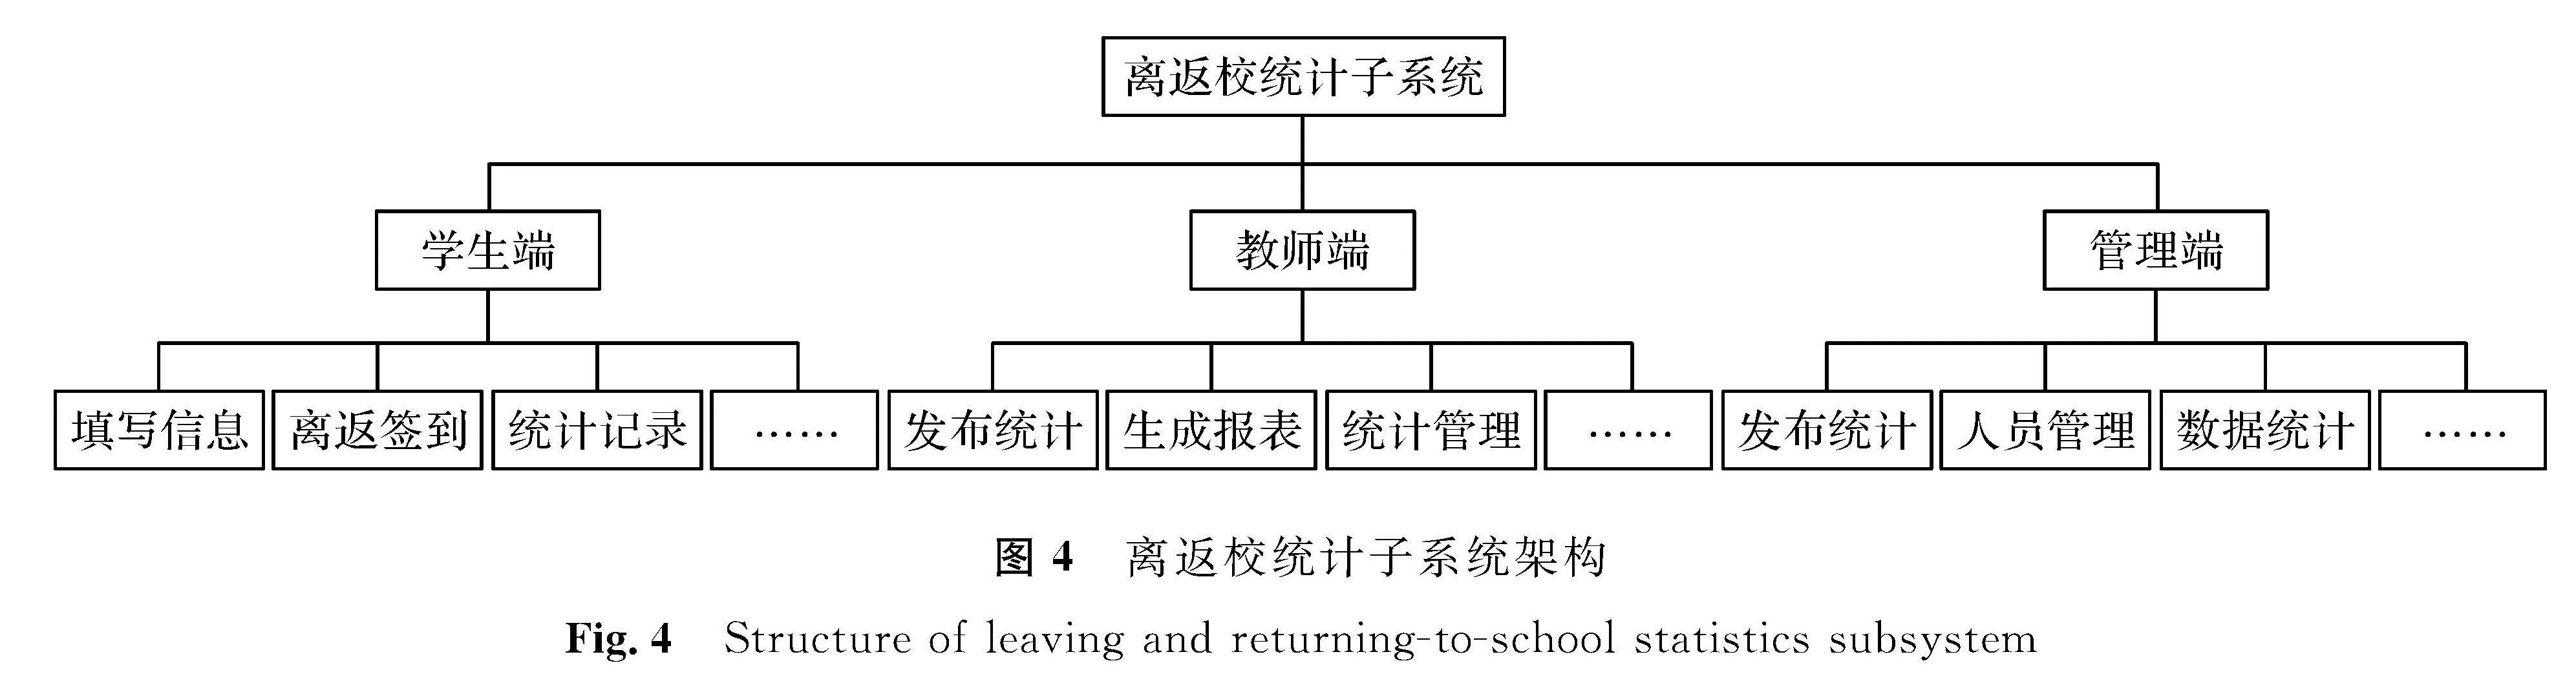 图4 离返校统计子系统架构<br/>Fig.4 Structure of leaving and returning-to-school statistics subsystem